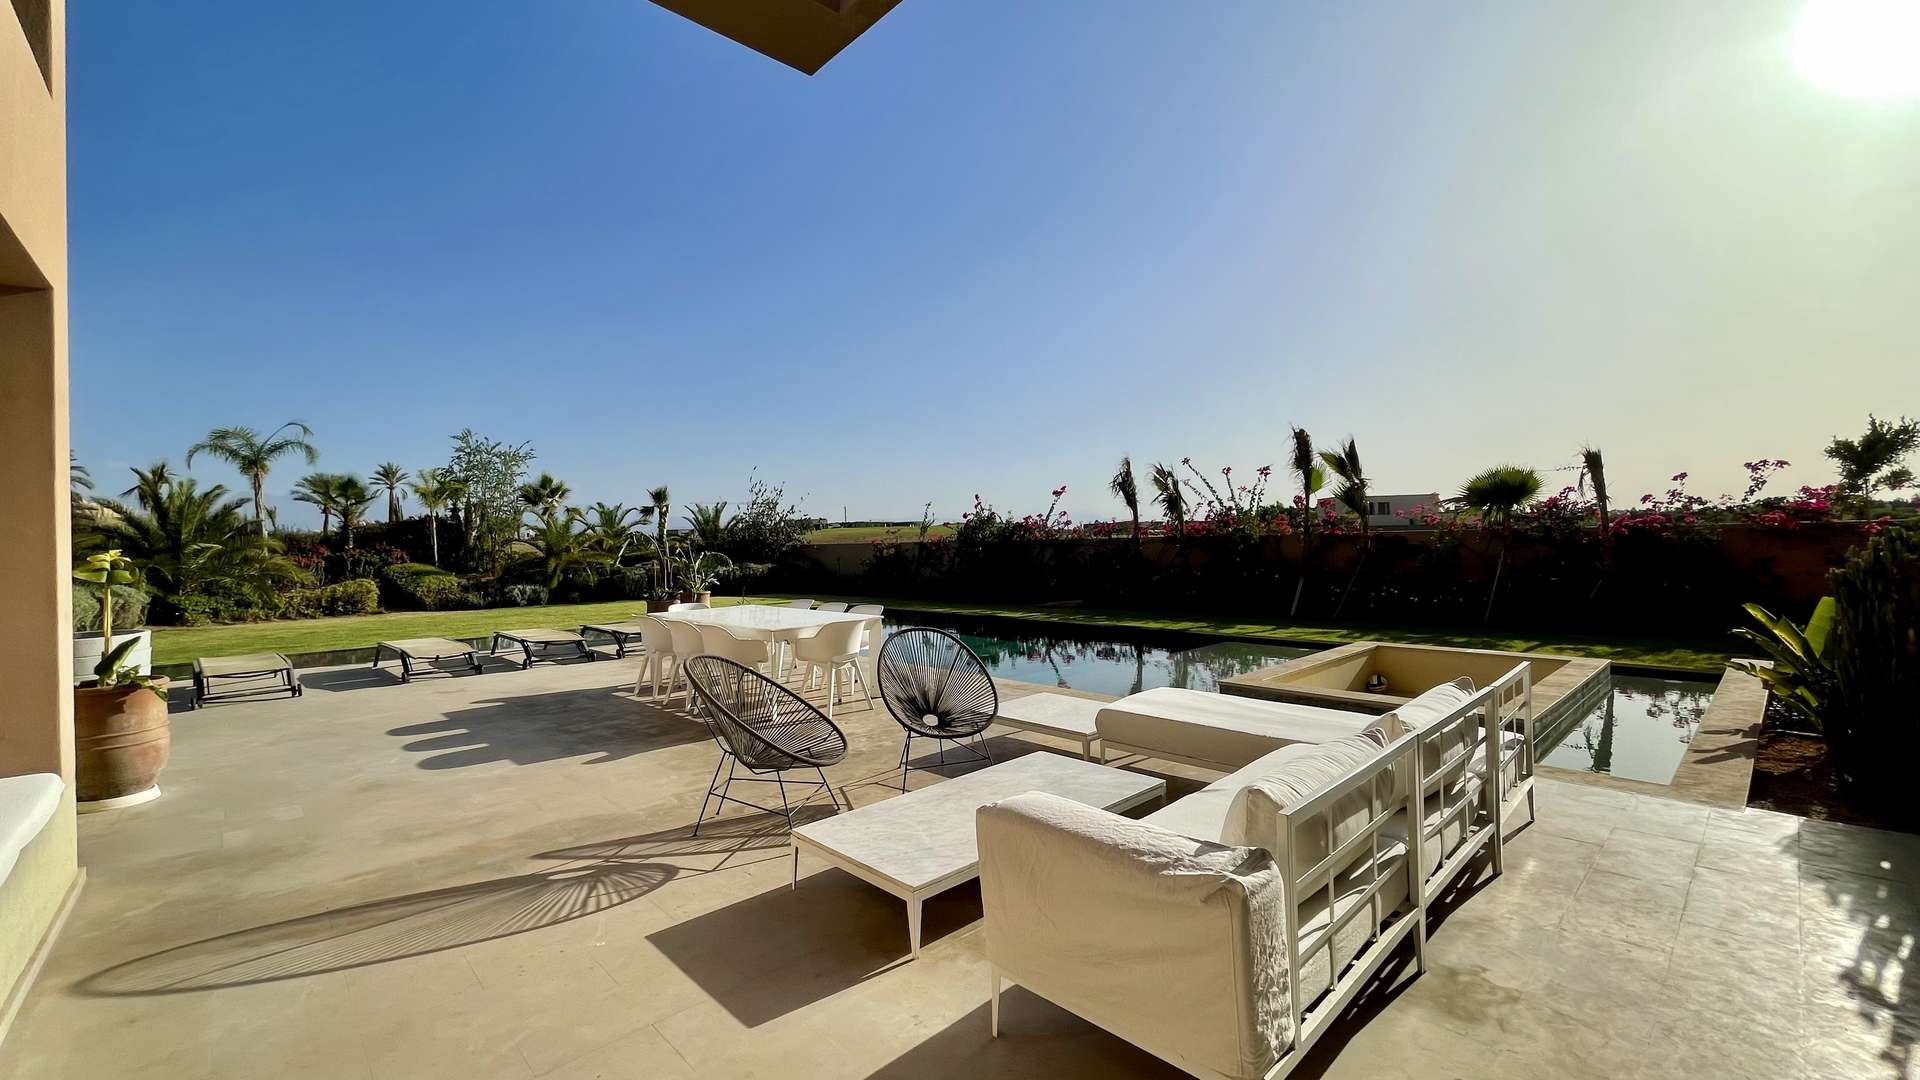 Vente,Villa,Magnifique propriété en première ligne sur le golf d'Amelkis.,Marrakech,Amelkis Golf Resort